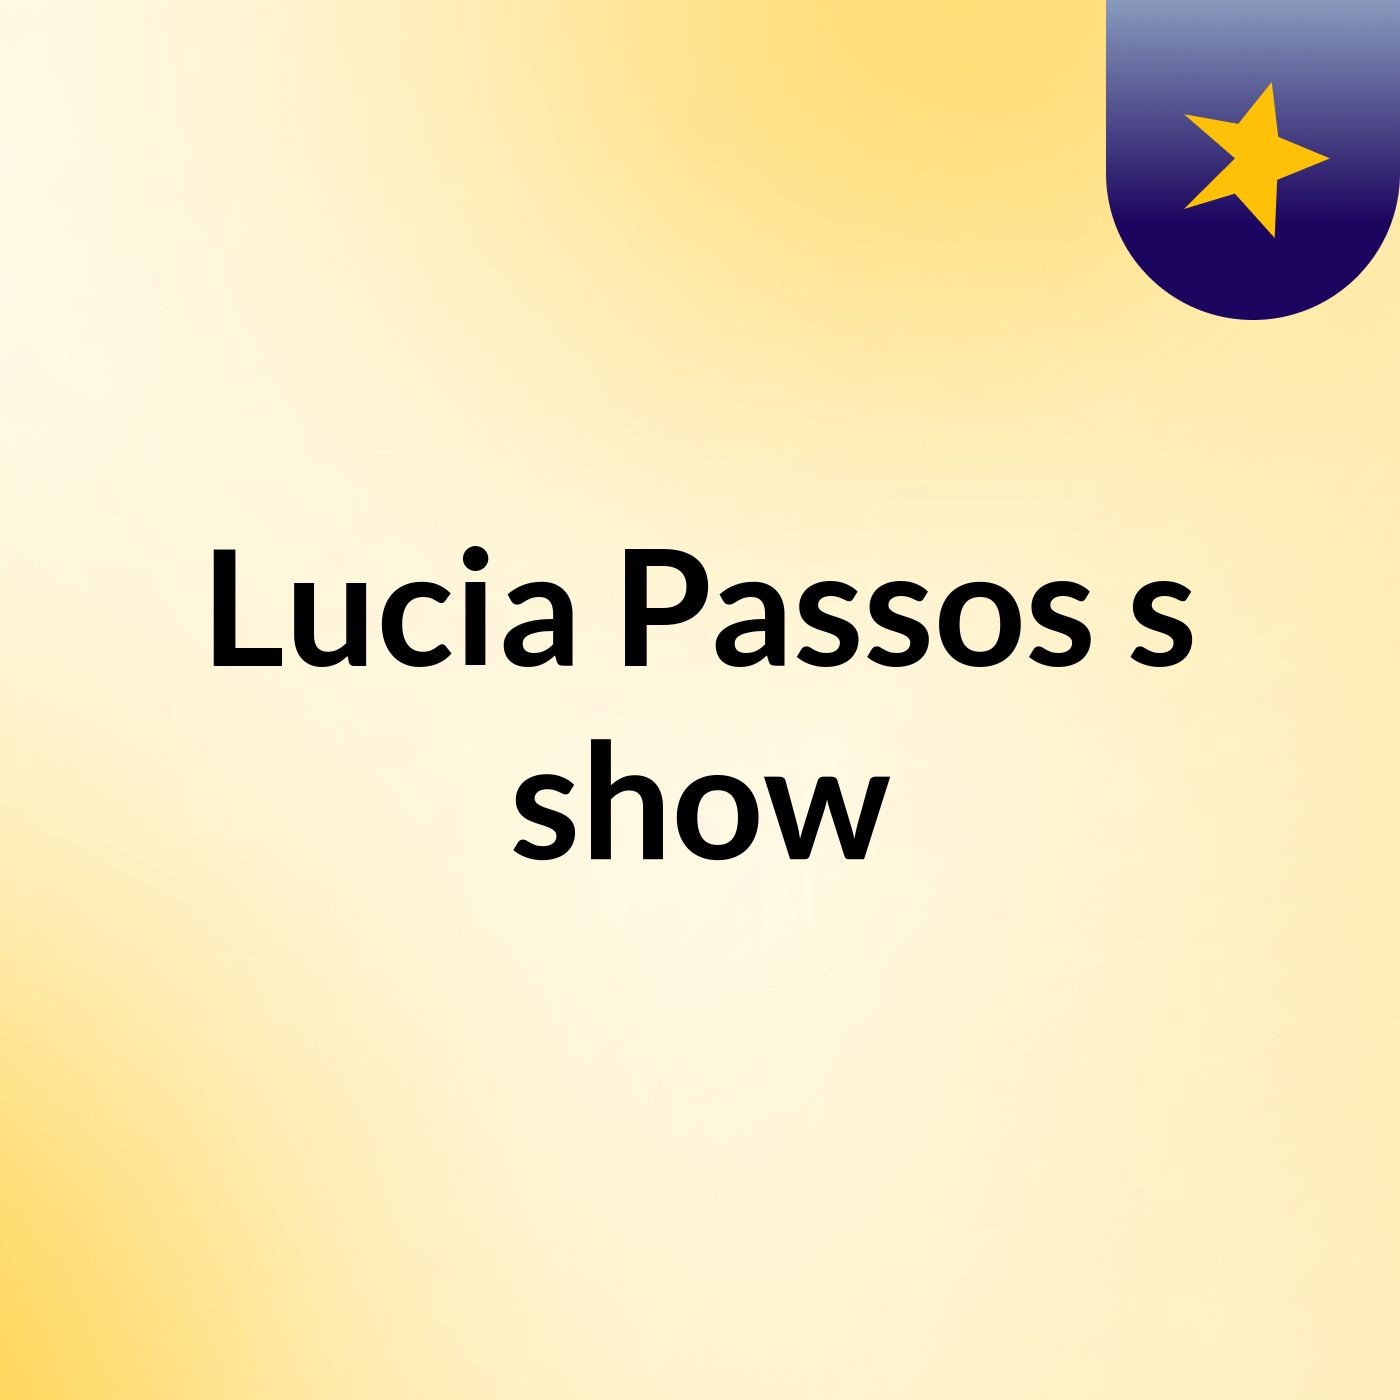 Lucia Passos's show